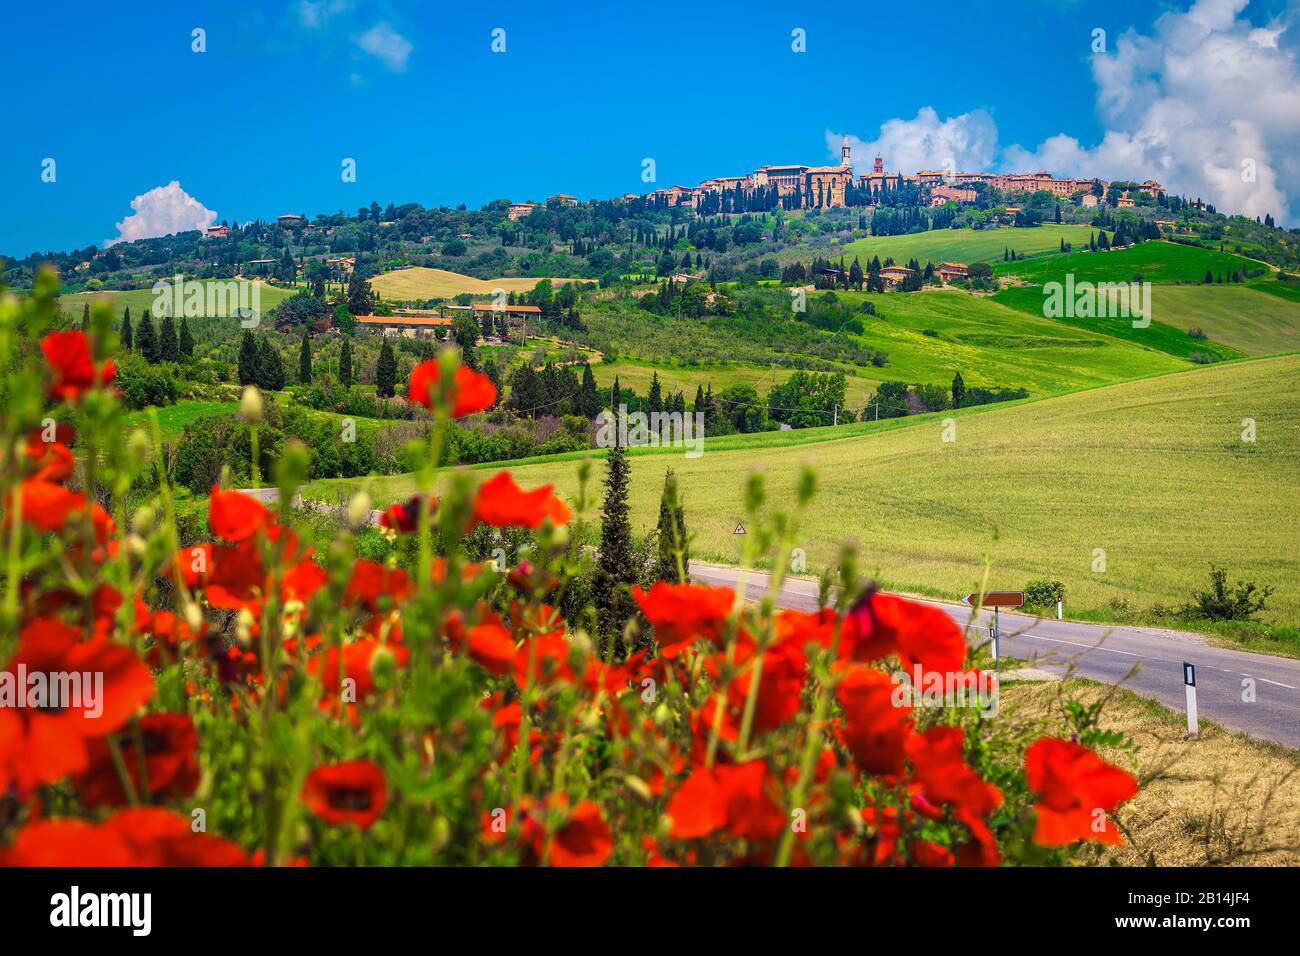 Paesaggio agricolo con campi di grano e papaveri rossi. Splendido paesaggio urbano di Pienza con paesaggio rurale, Toscana, Italia, Europa Foto Stock